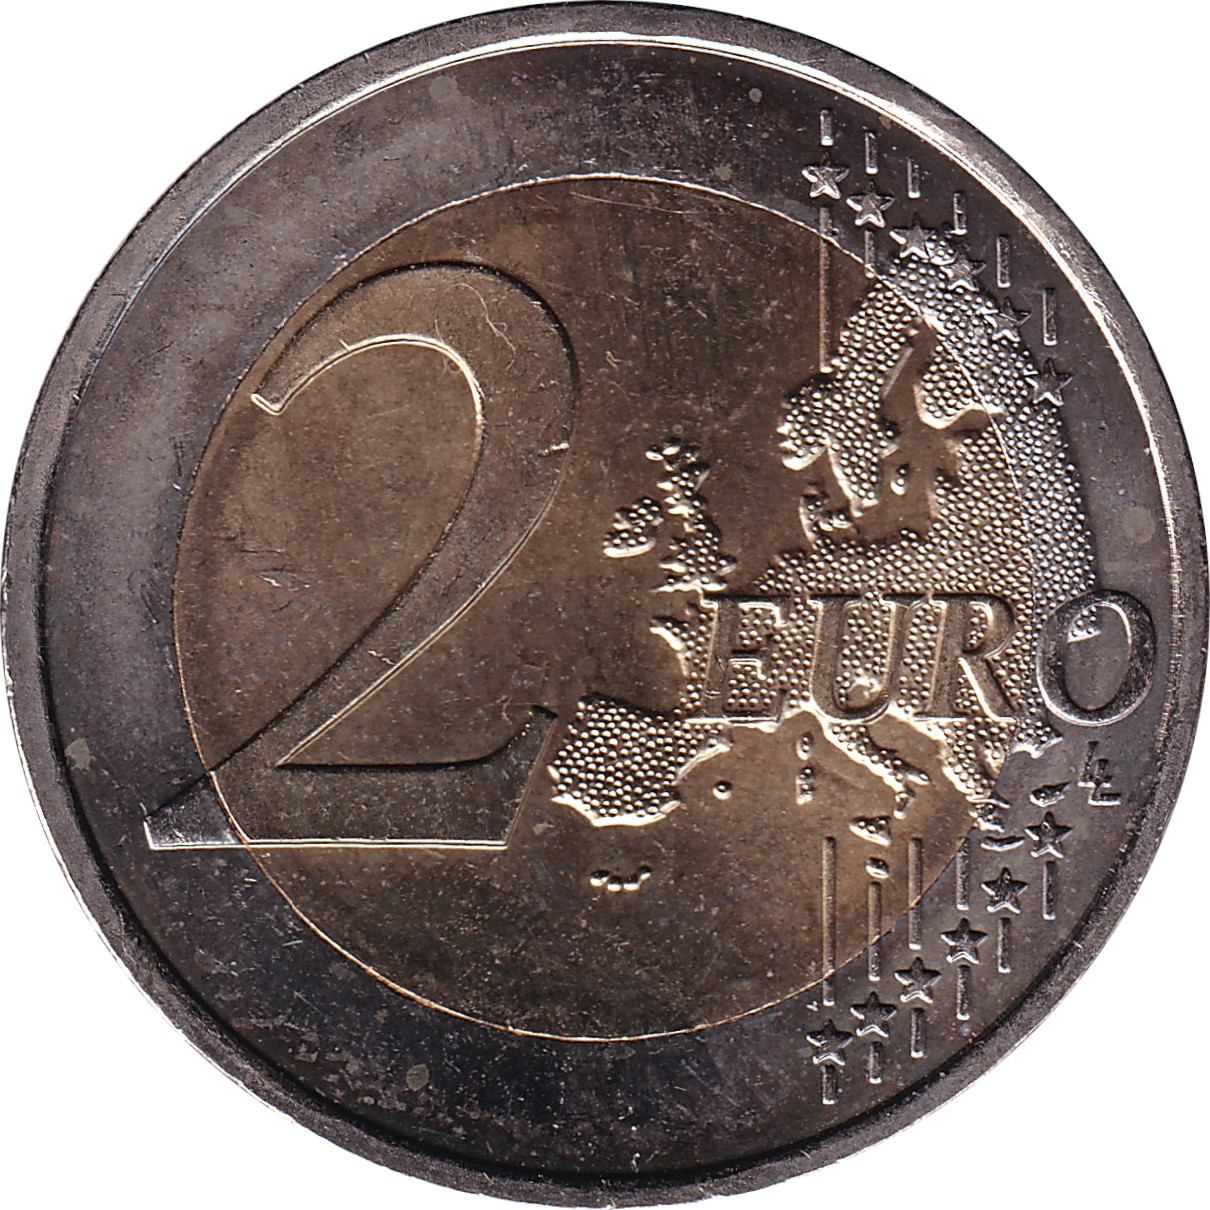 2 euro - Palais grand-ducal